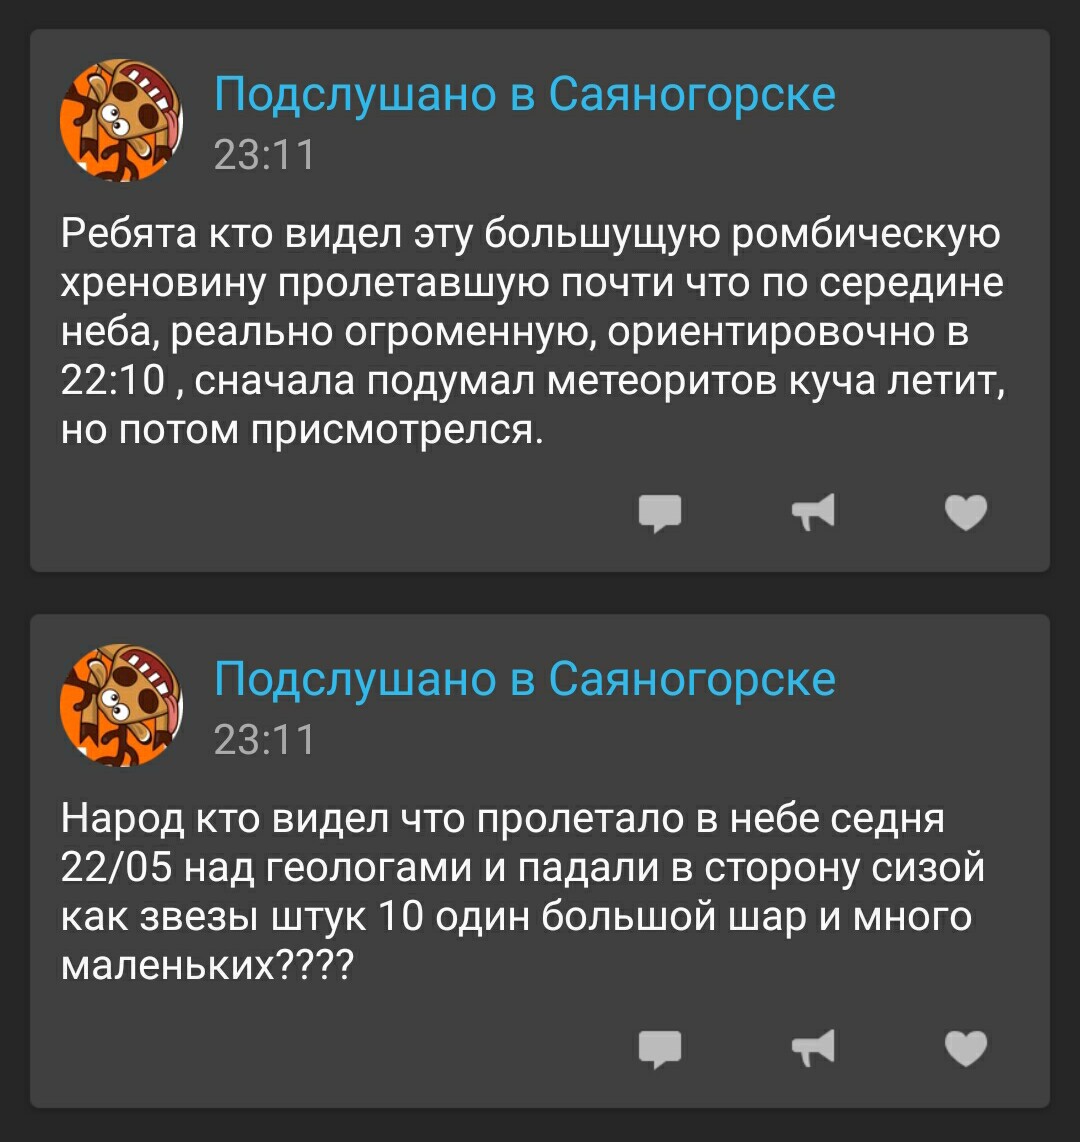 Саяногорск Инфо - screenshot_2016-12-01-23-14-11_1.jpg, Скачано: 568